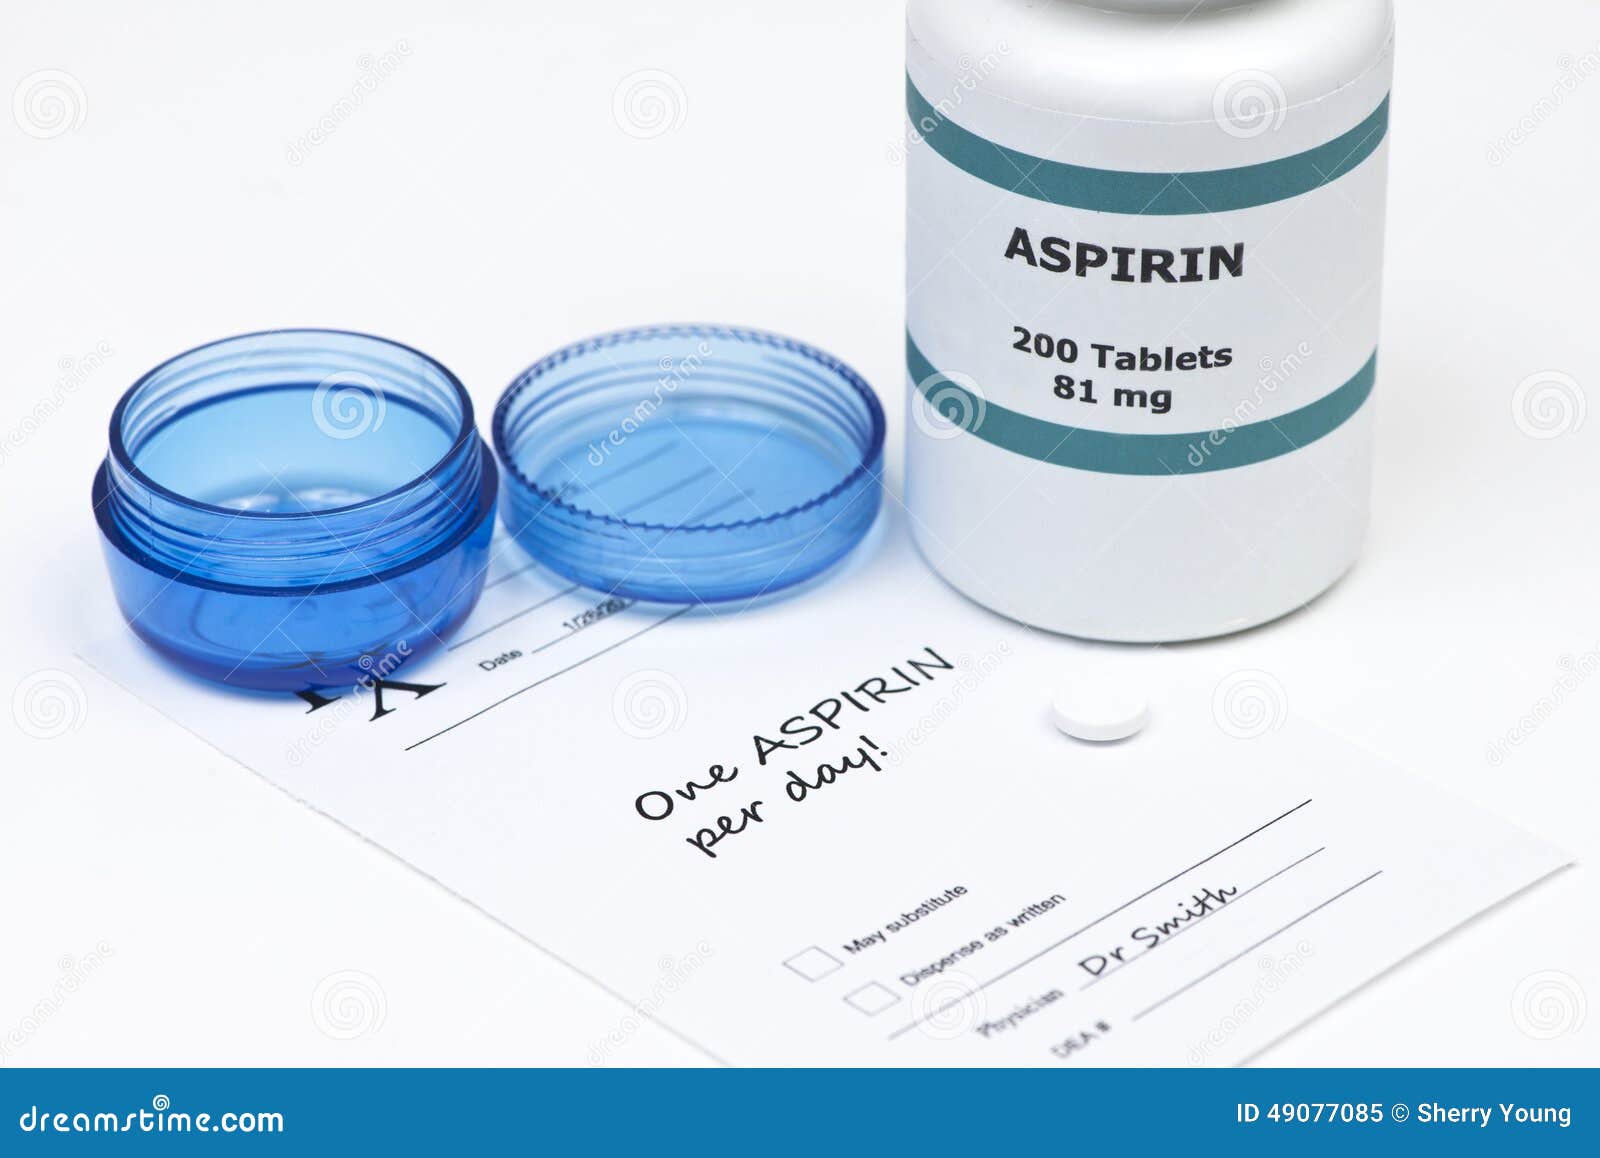 daily aspirin